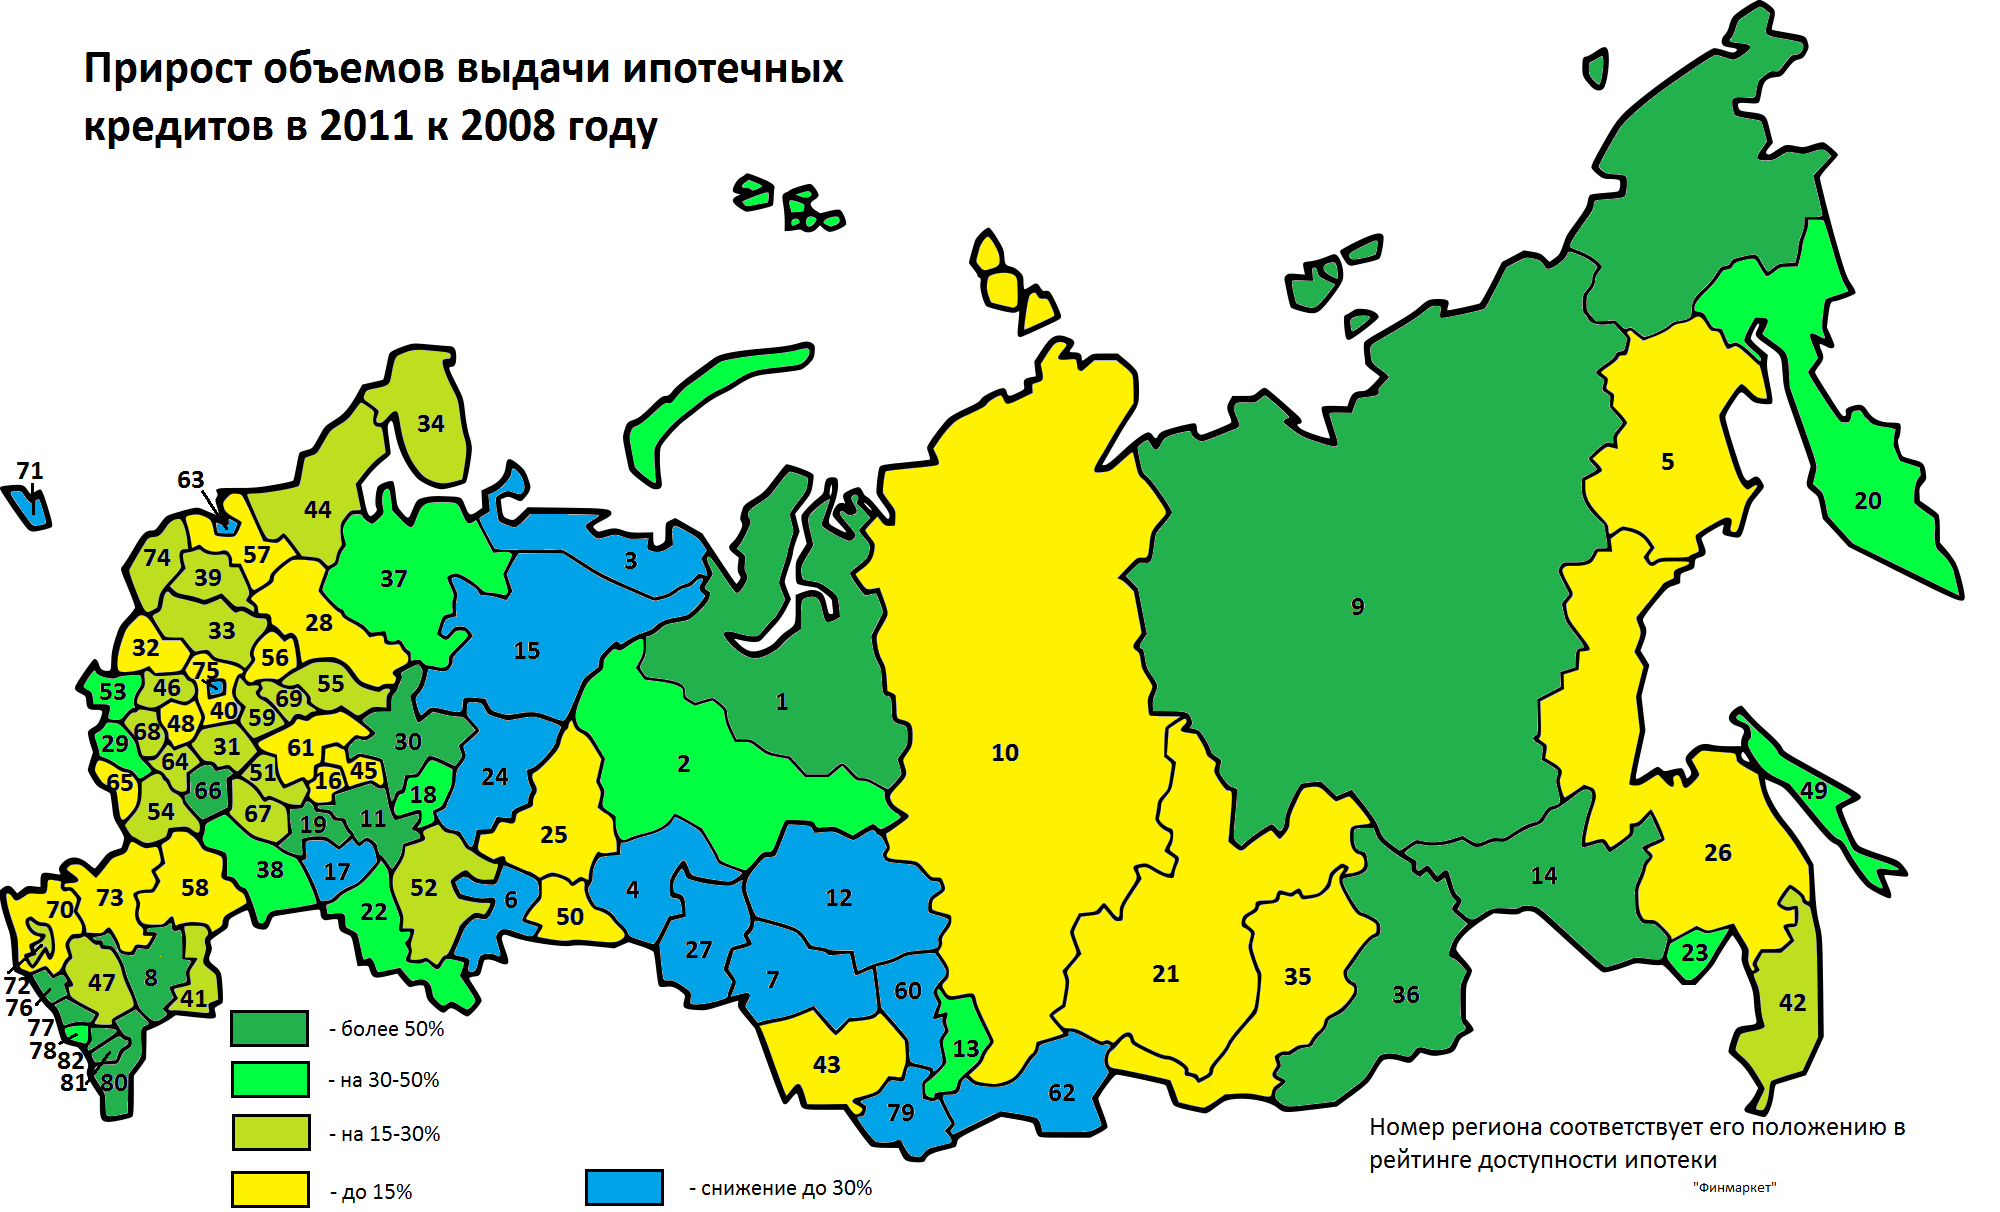 Выделять на карте регионы. Регионы РФ. Карта России с номерами регионов. Номера регионов на карте. Карта автомобильных регионов России.